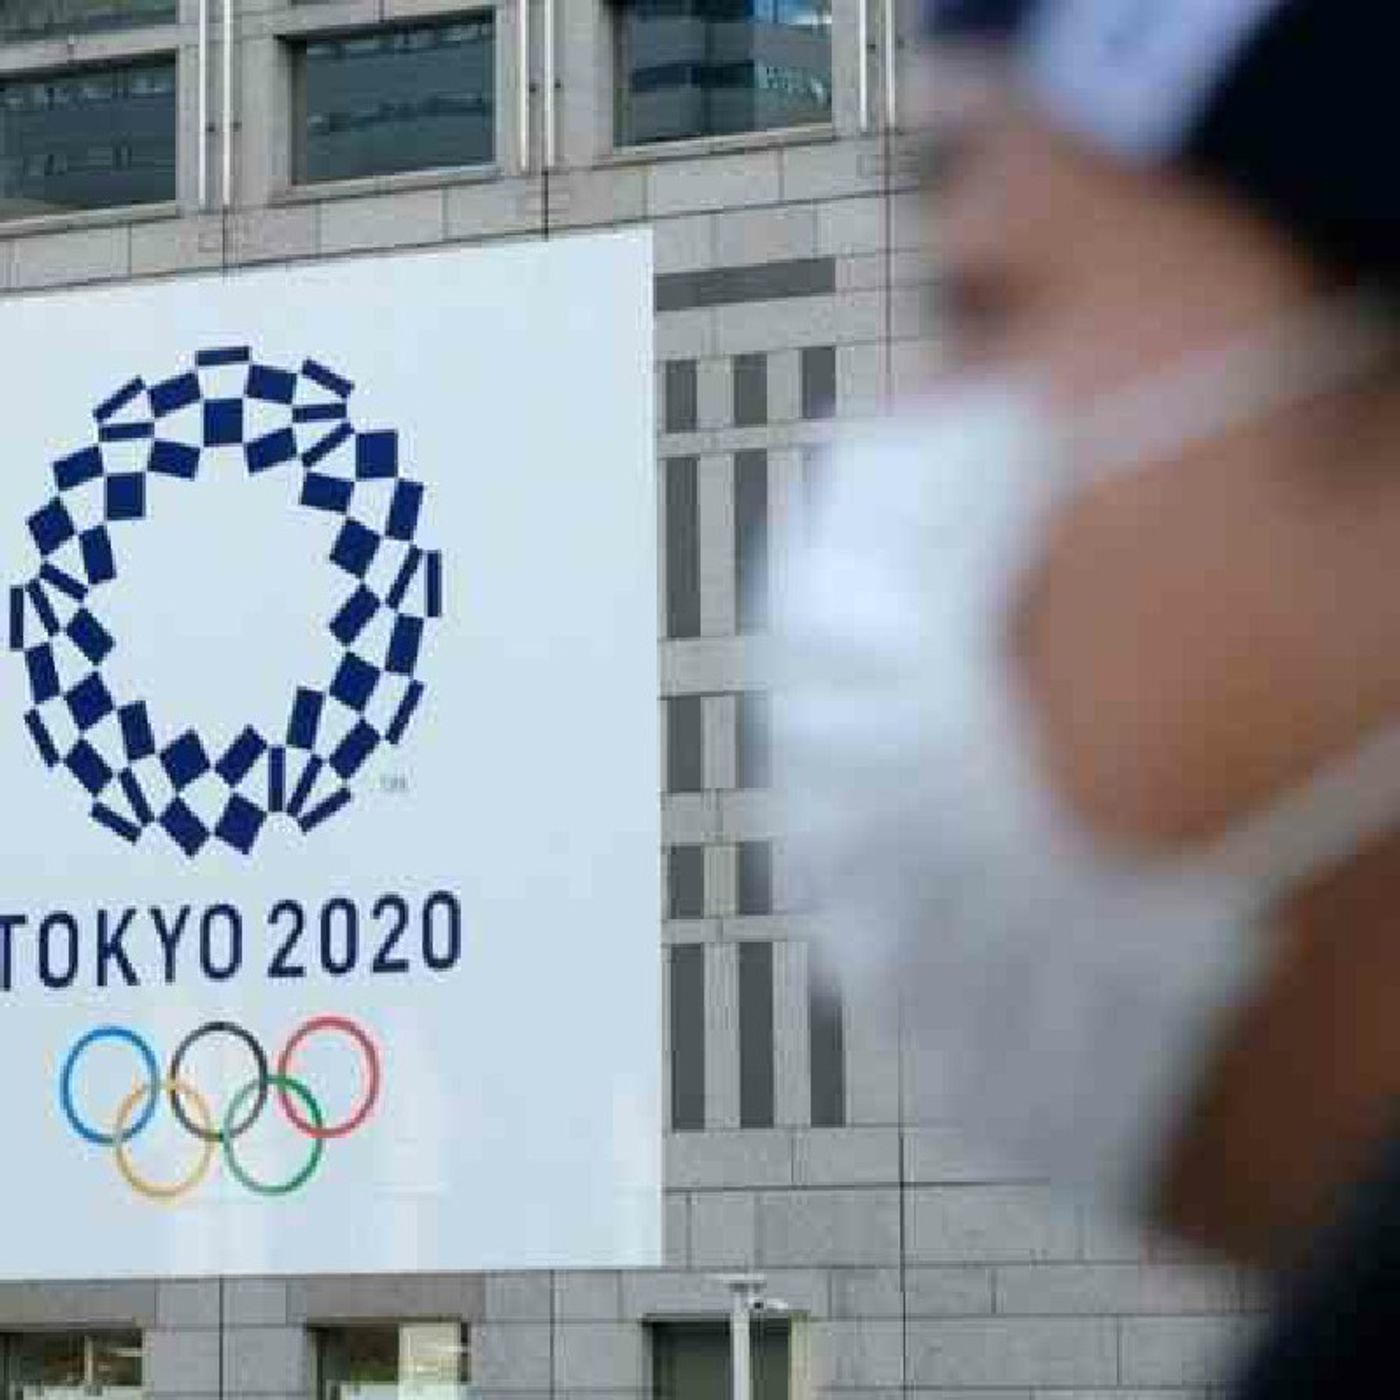 Jogos Olímpicos de Tóquio são adiados